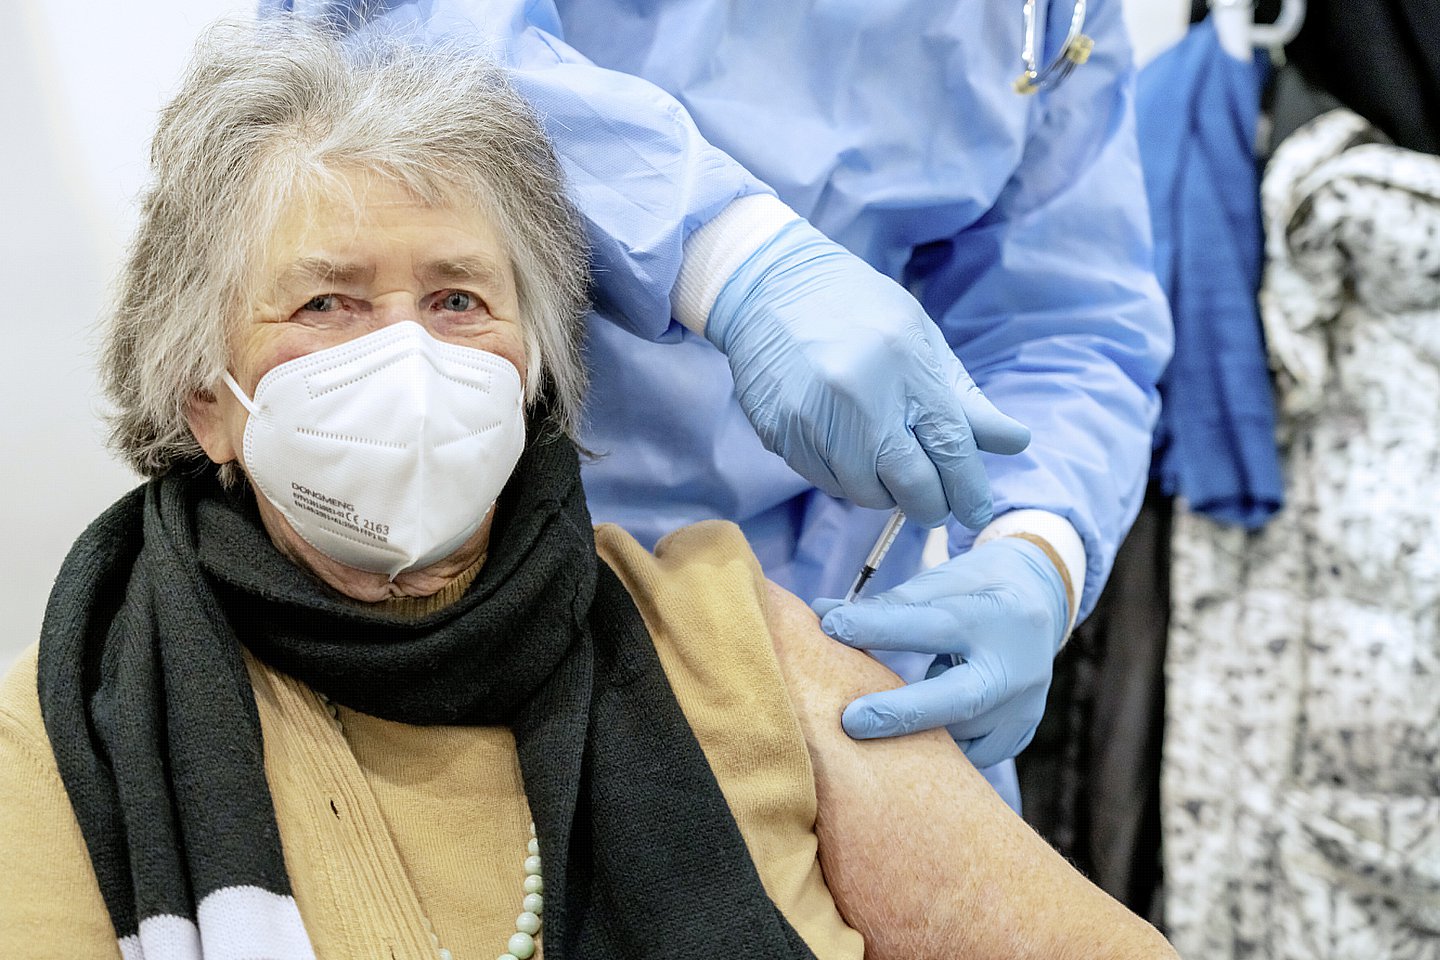 Foto: Eine ältere Frau lässt sich gegen Covid-19 impfen.